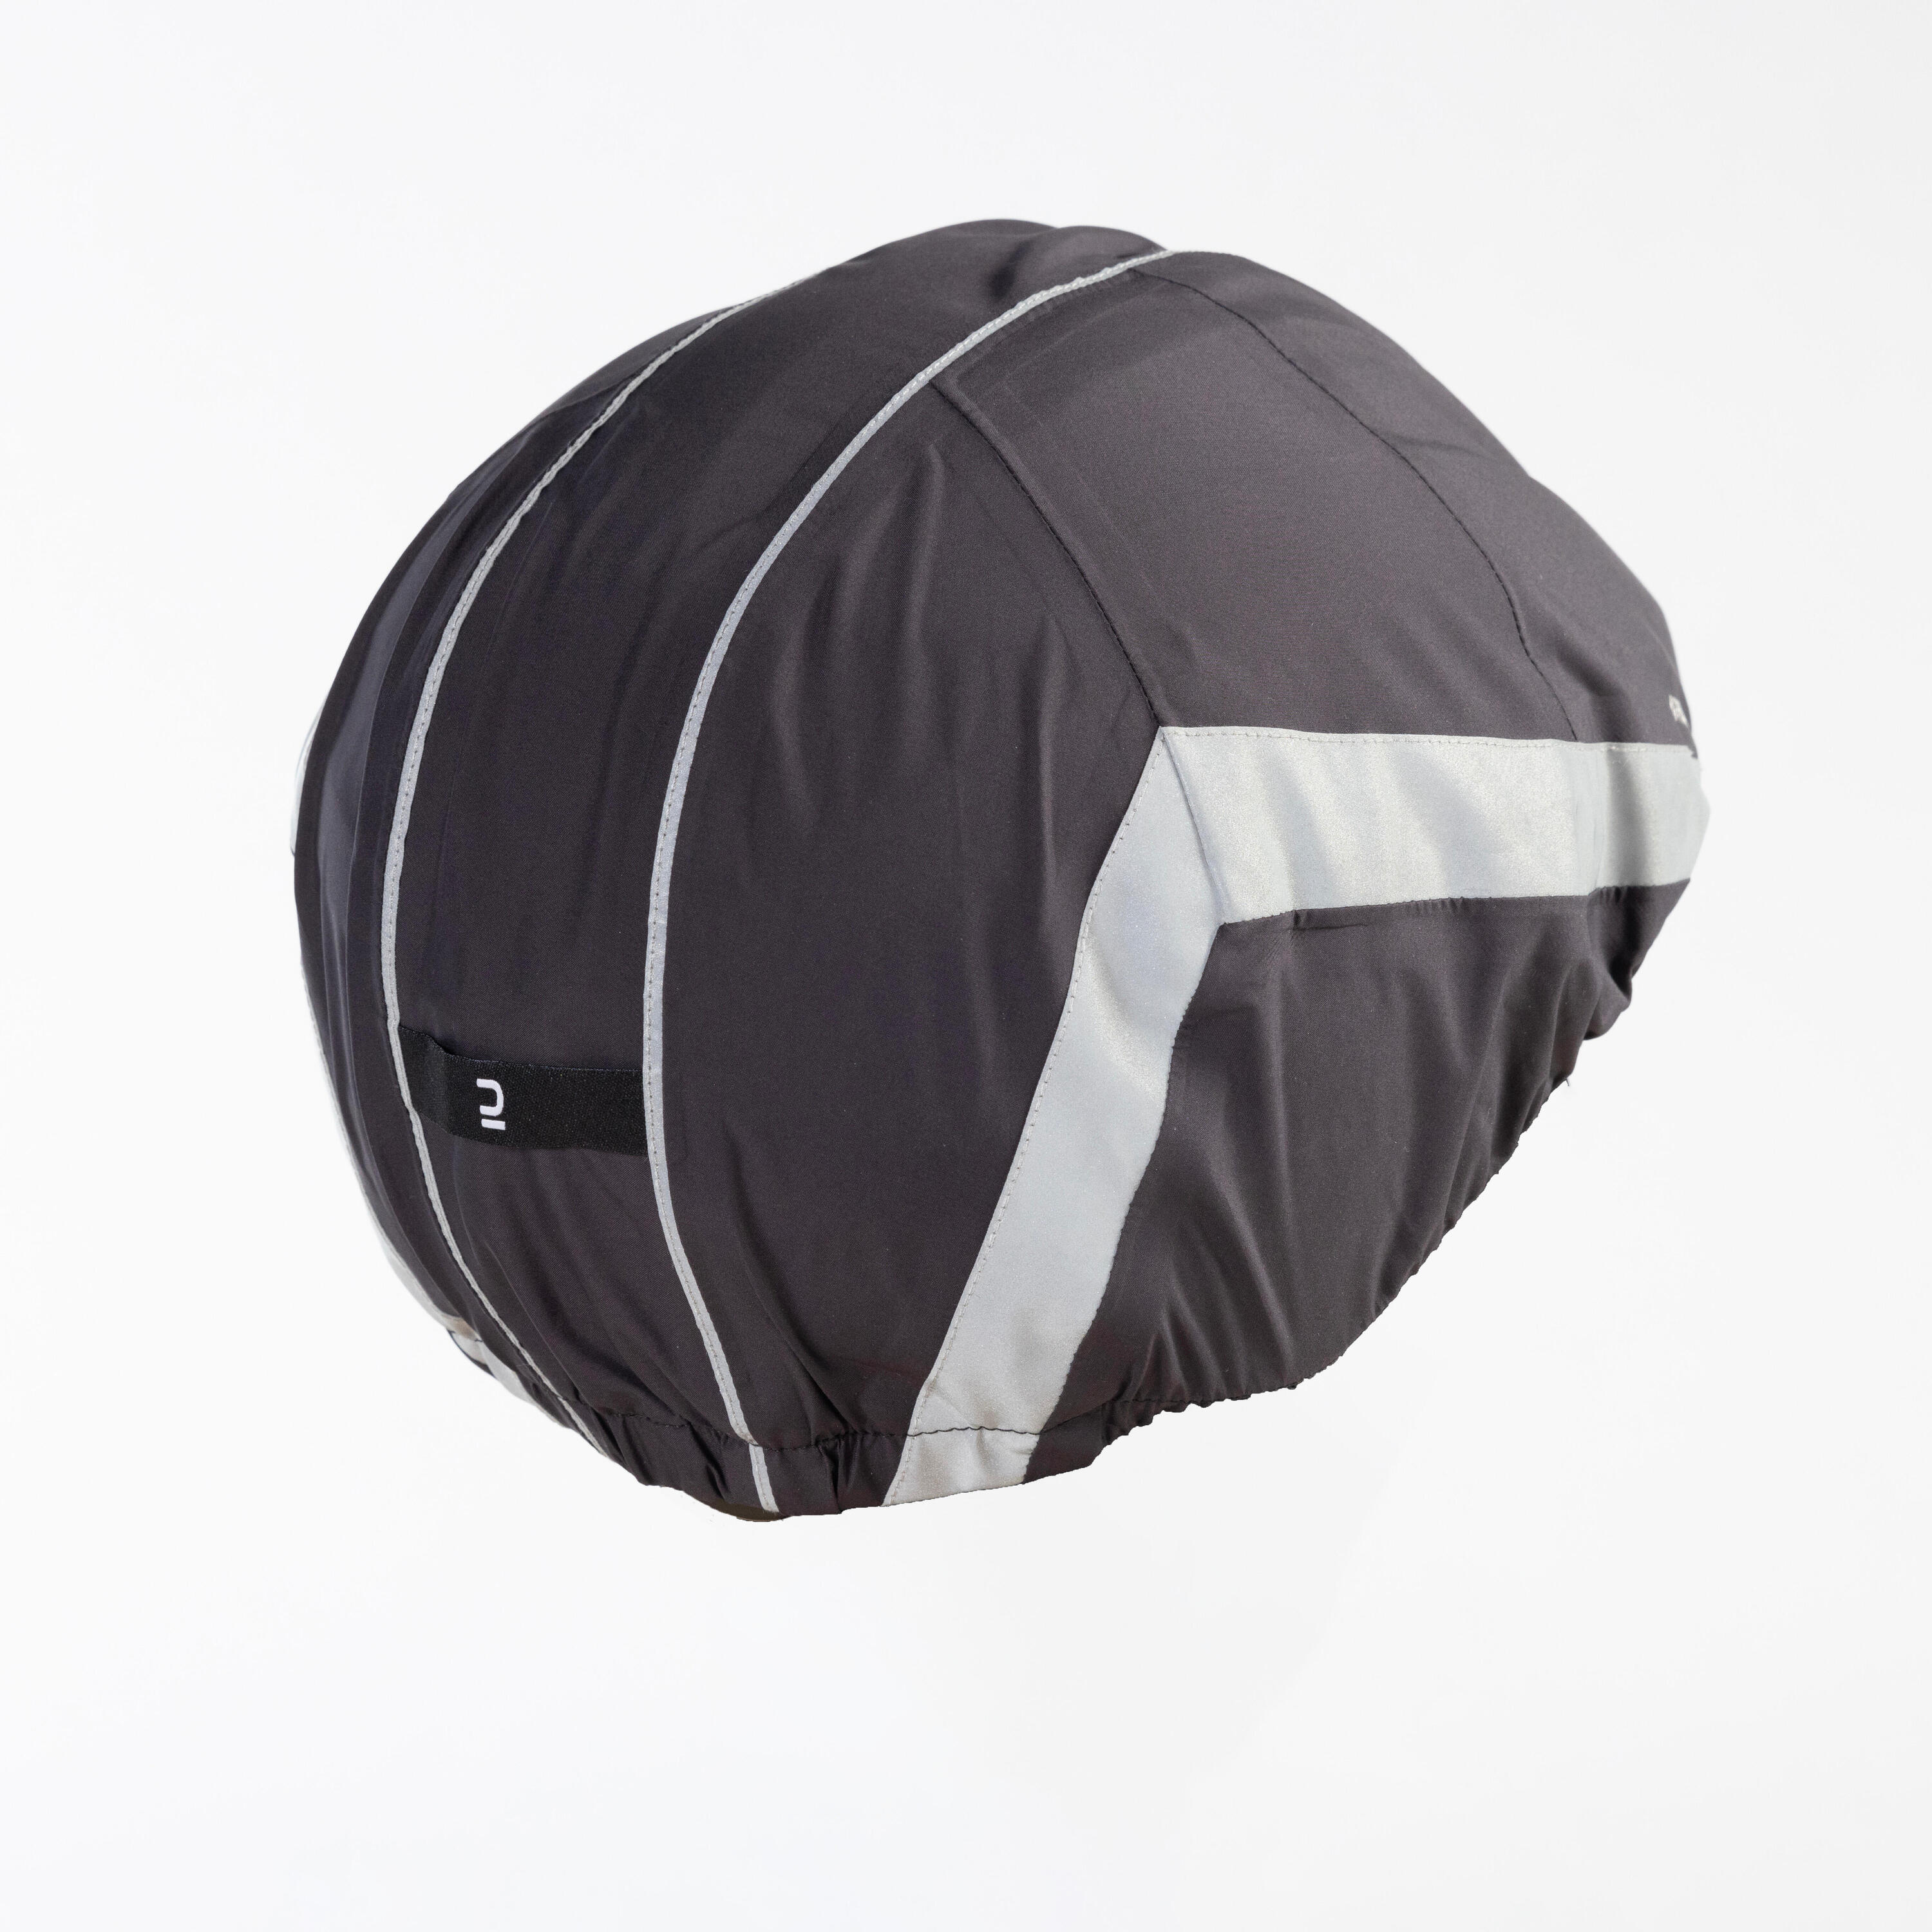 Night Visibility Waterproof Helmet Cover 940 - Black 4/6